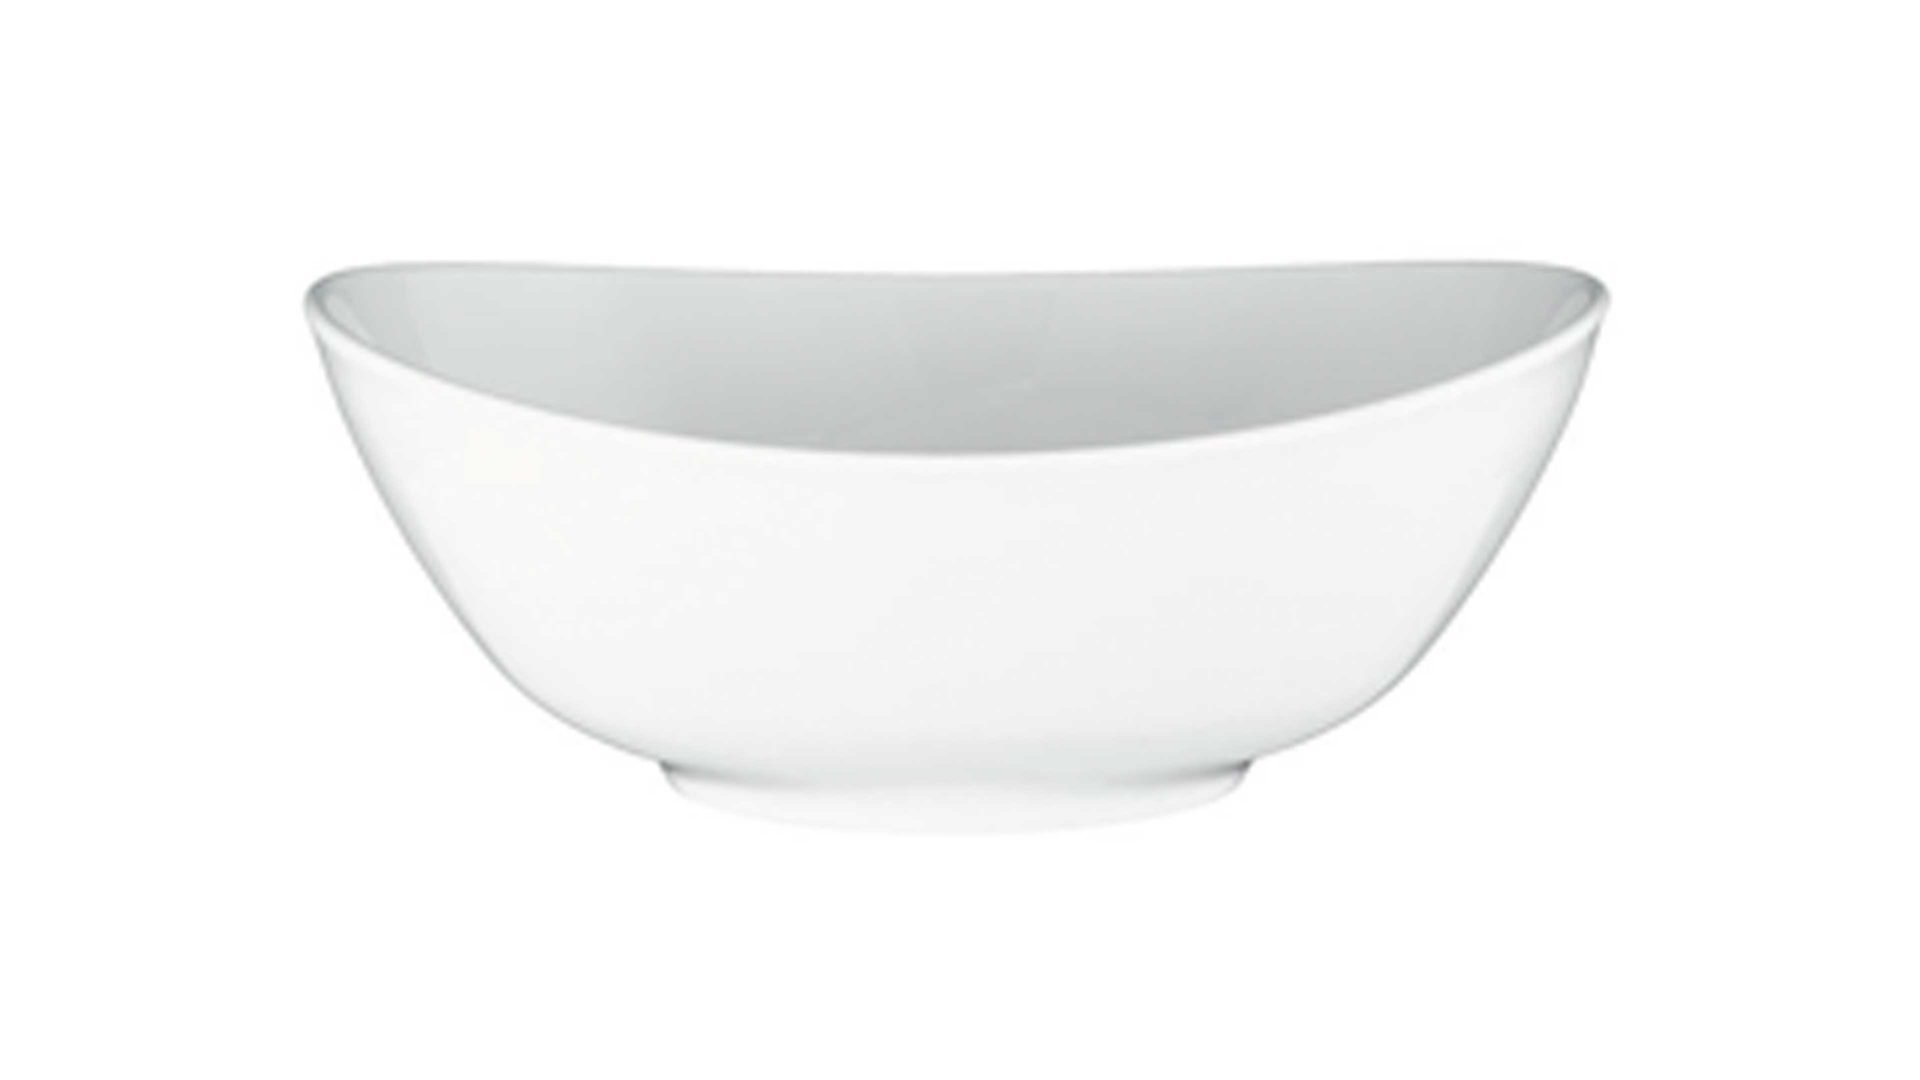 Schüssel Seltmann aus Porzellan in Weiß Seltmann Porzellanserie Modern Life 6 – Schüssel weißes Porzellan – Durchmesser ca. 26 cm